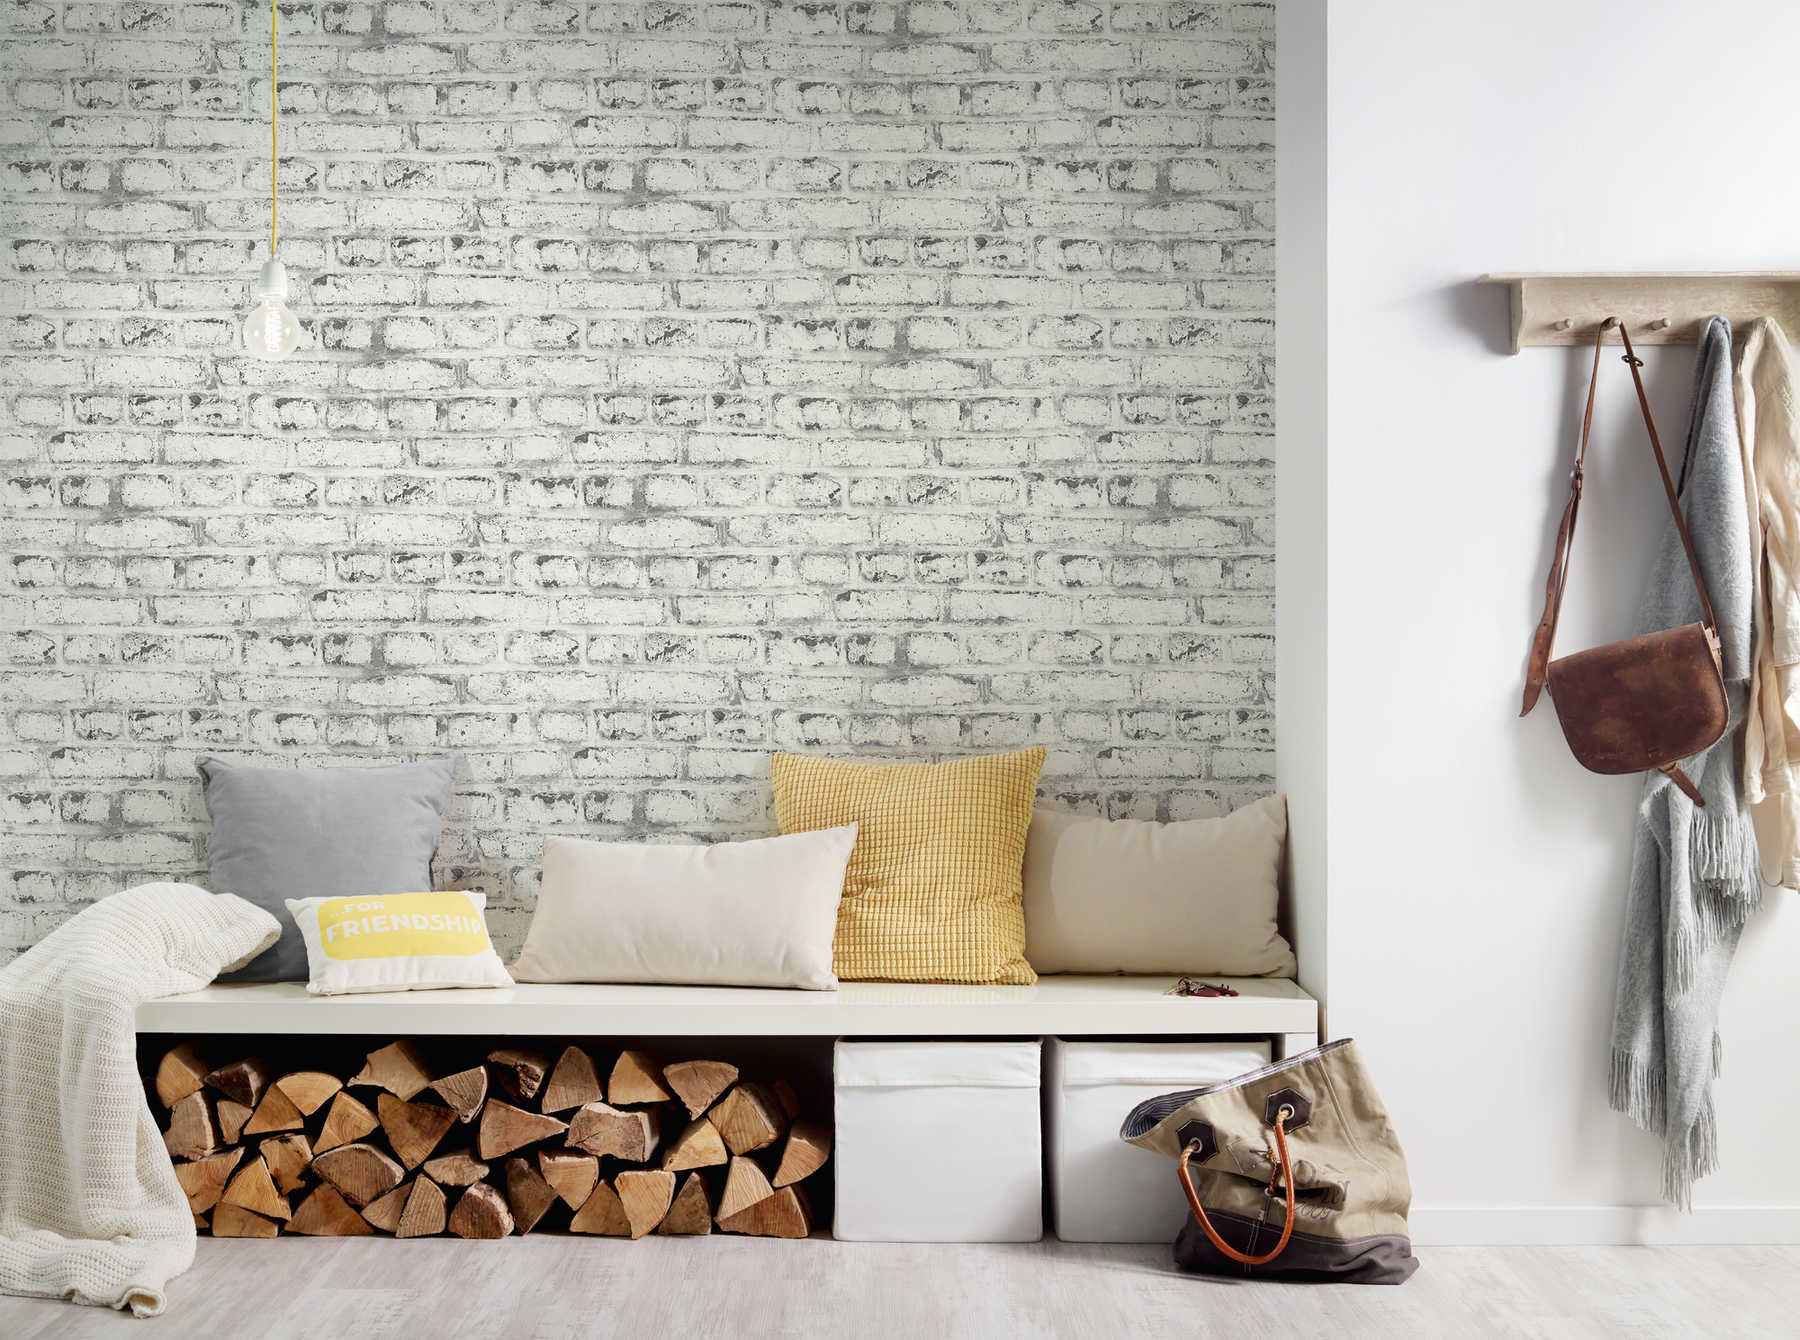             Steenbehang witte bakstenen muur, industriële stijl - wit, grijs
        